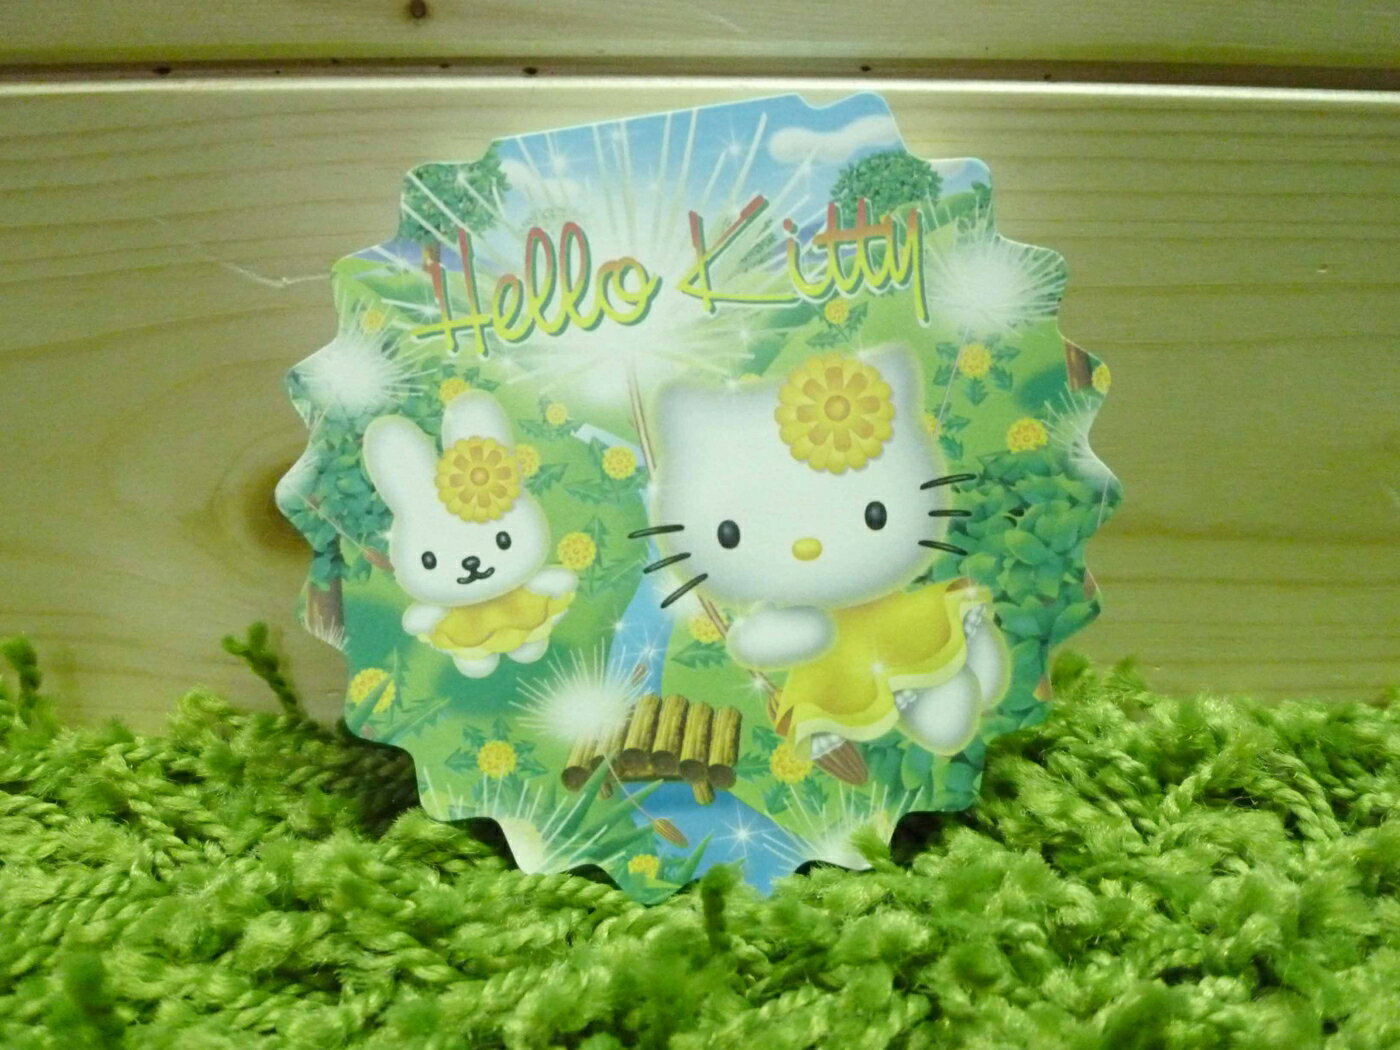 【震撼精品百貨】Hello Kitty 凱蒂貓 造型便條紙-黃花款【共1款】 震撼日式精品百貨